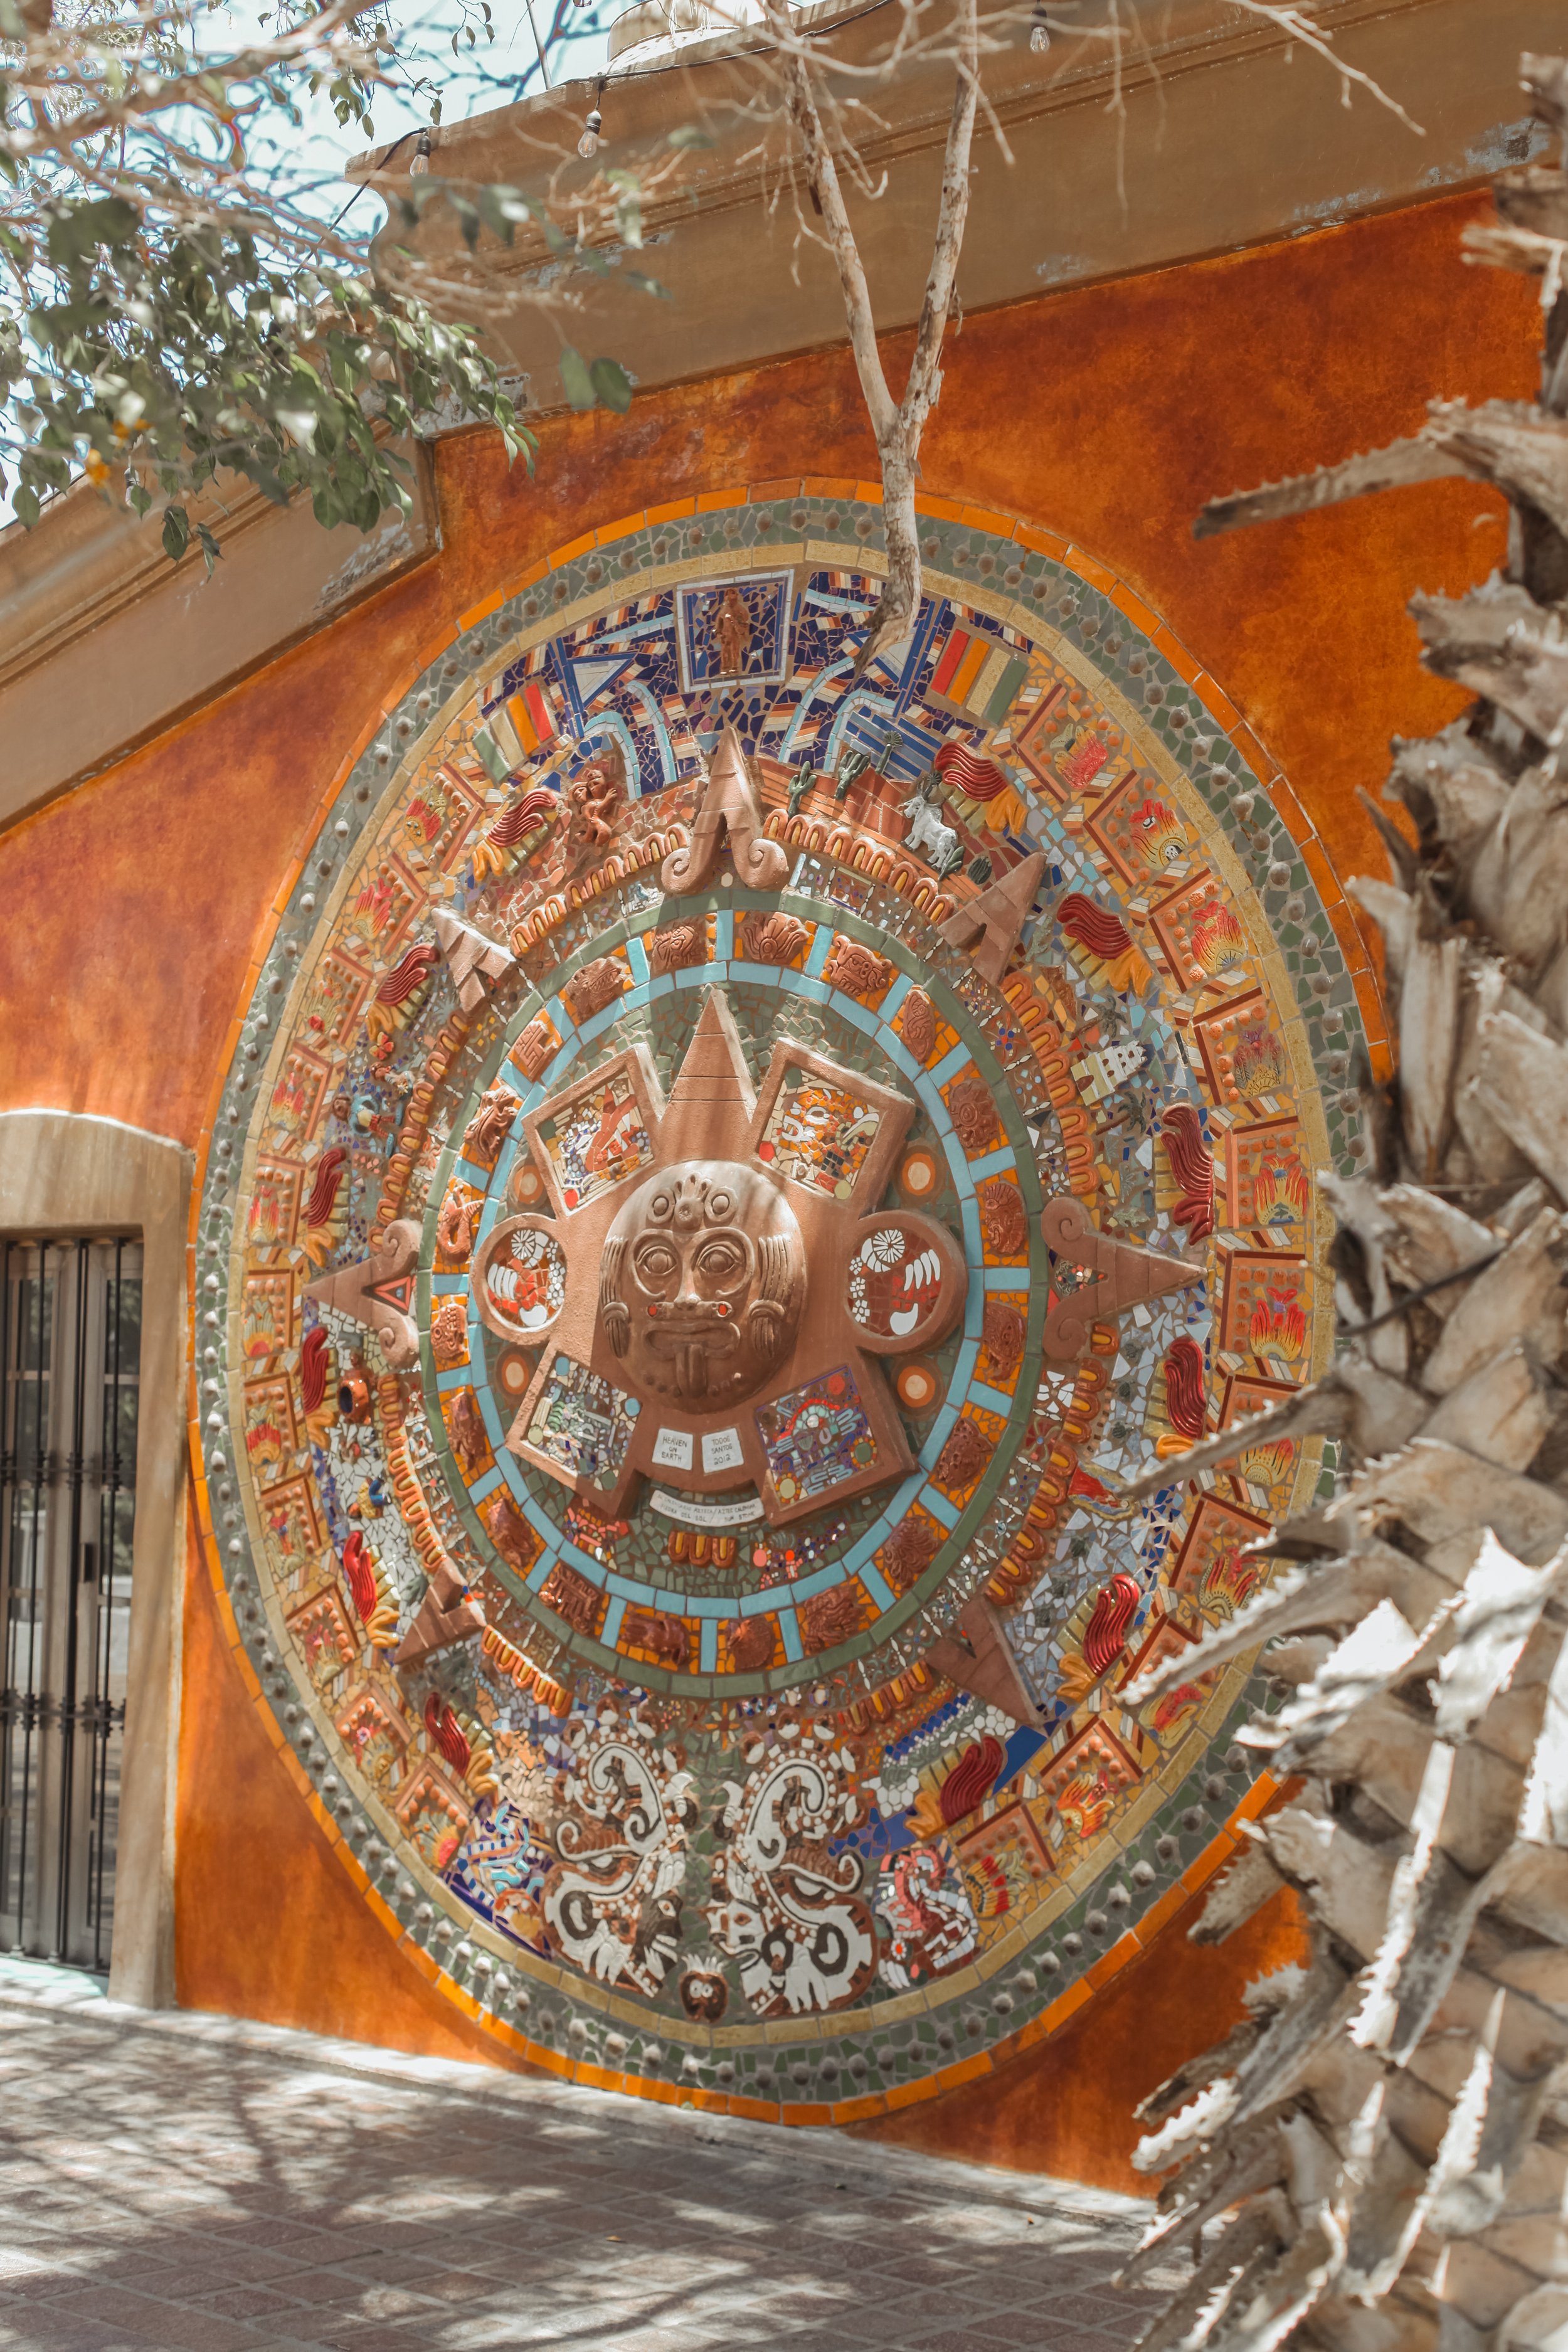 The Aztec Calendar Mural 